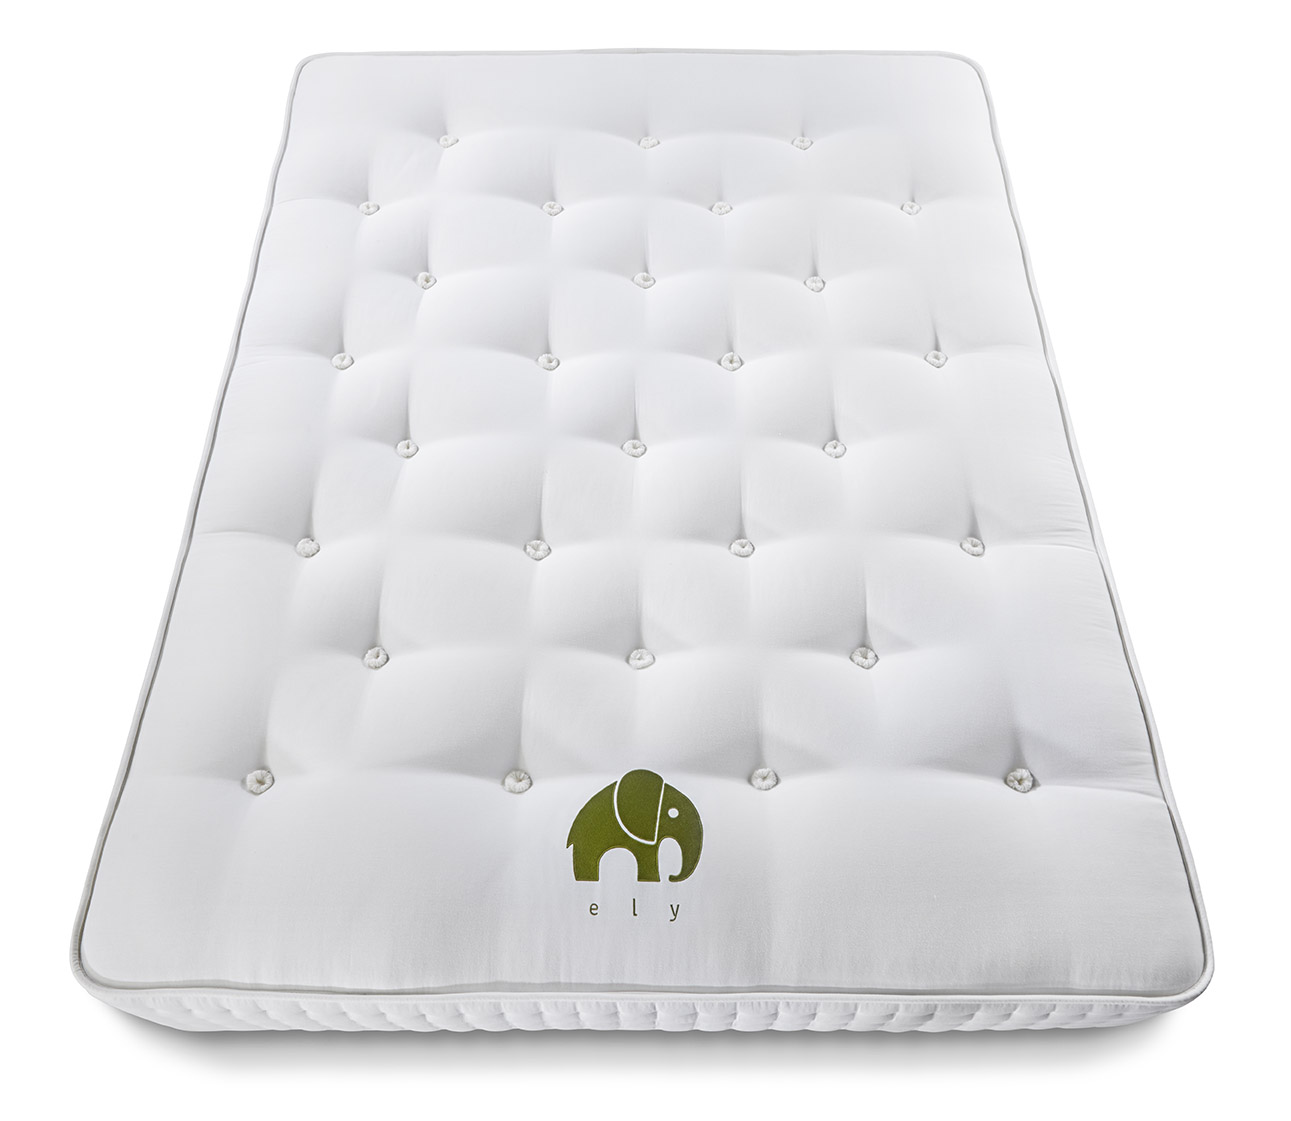 pocket-sprung-mattress